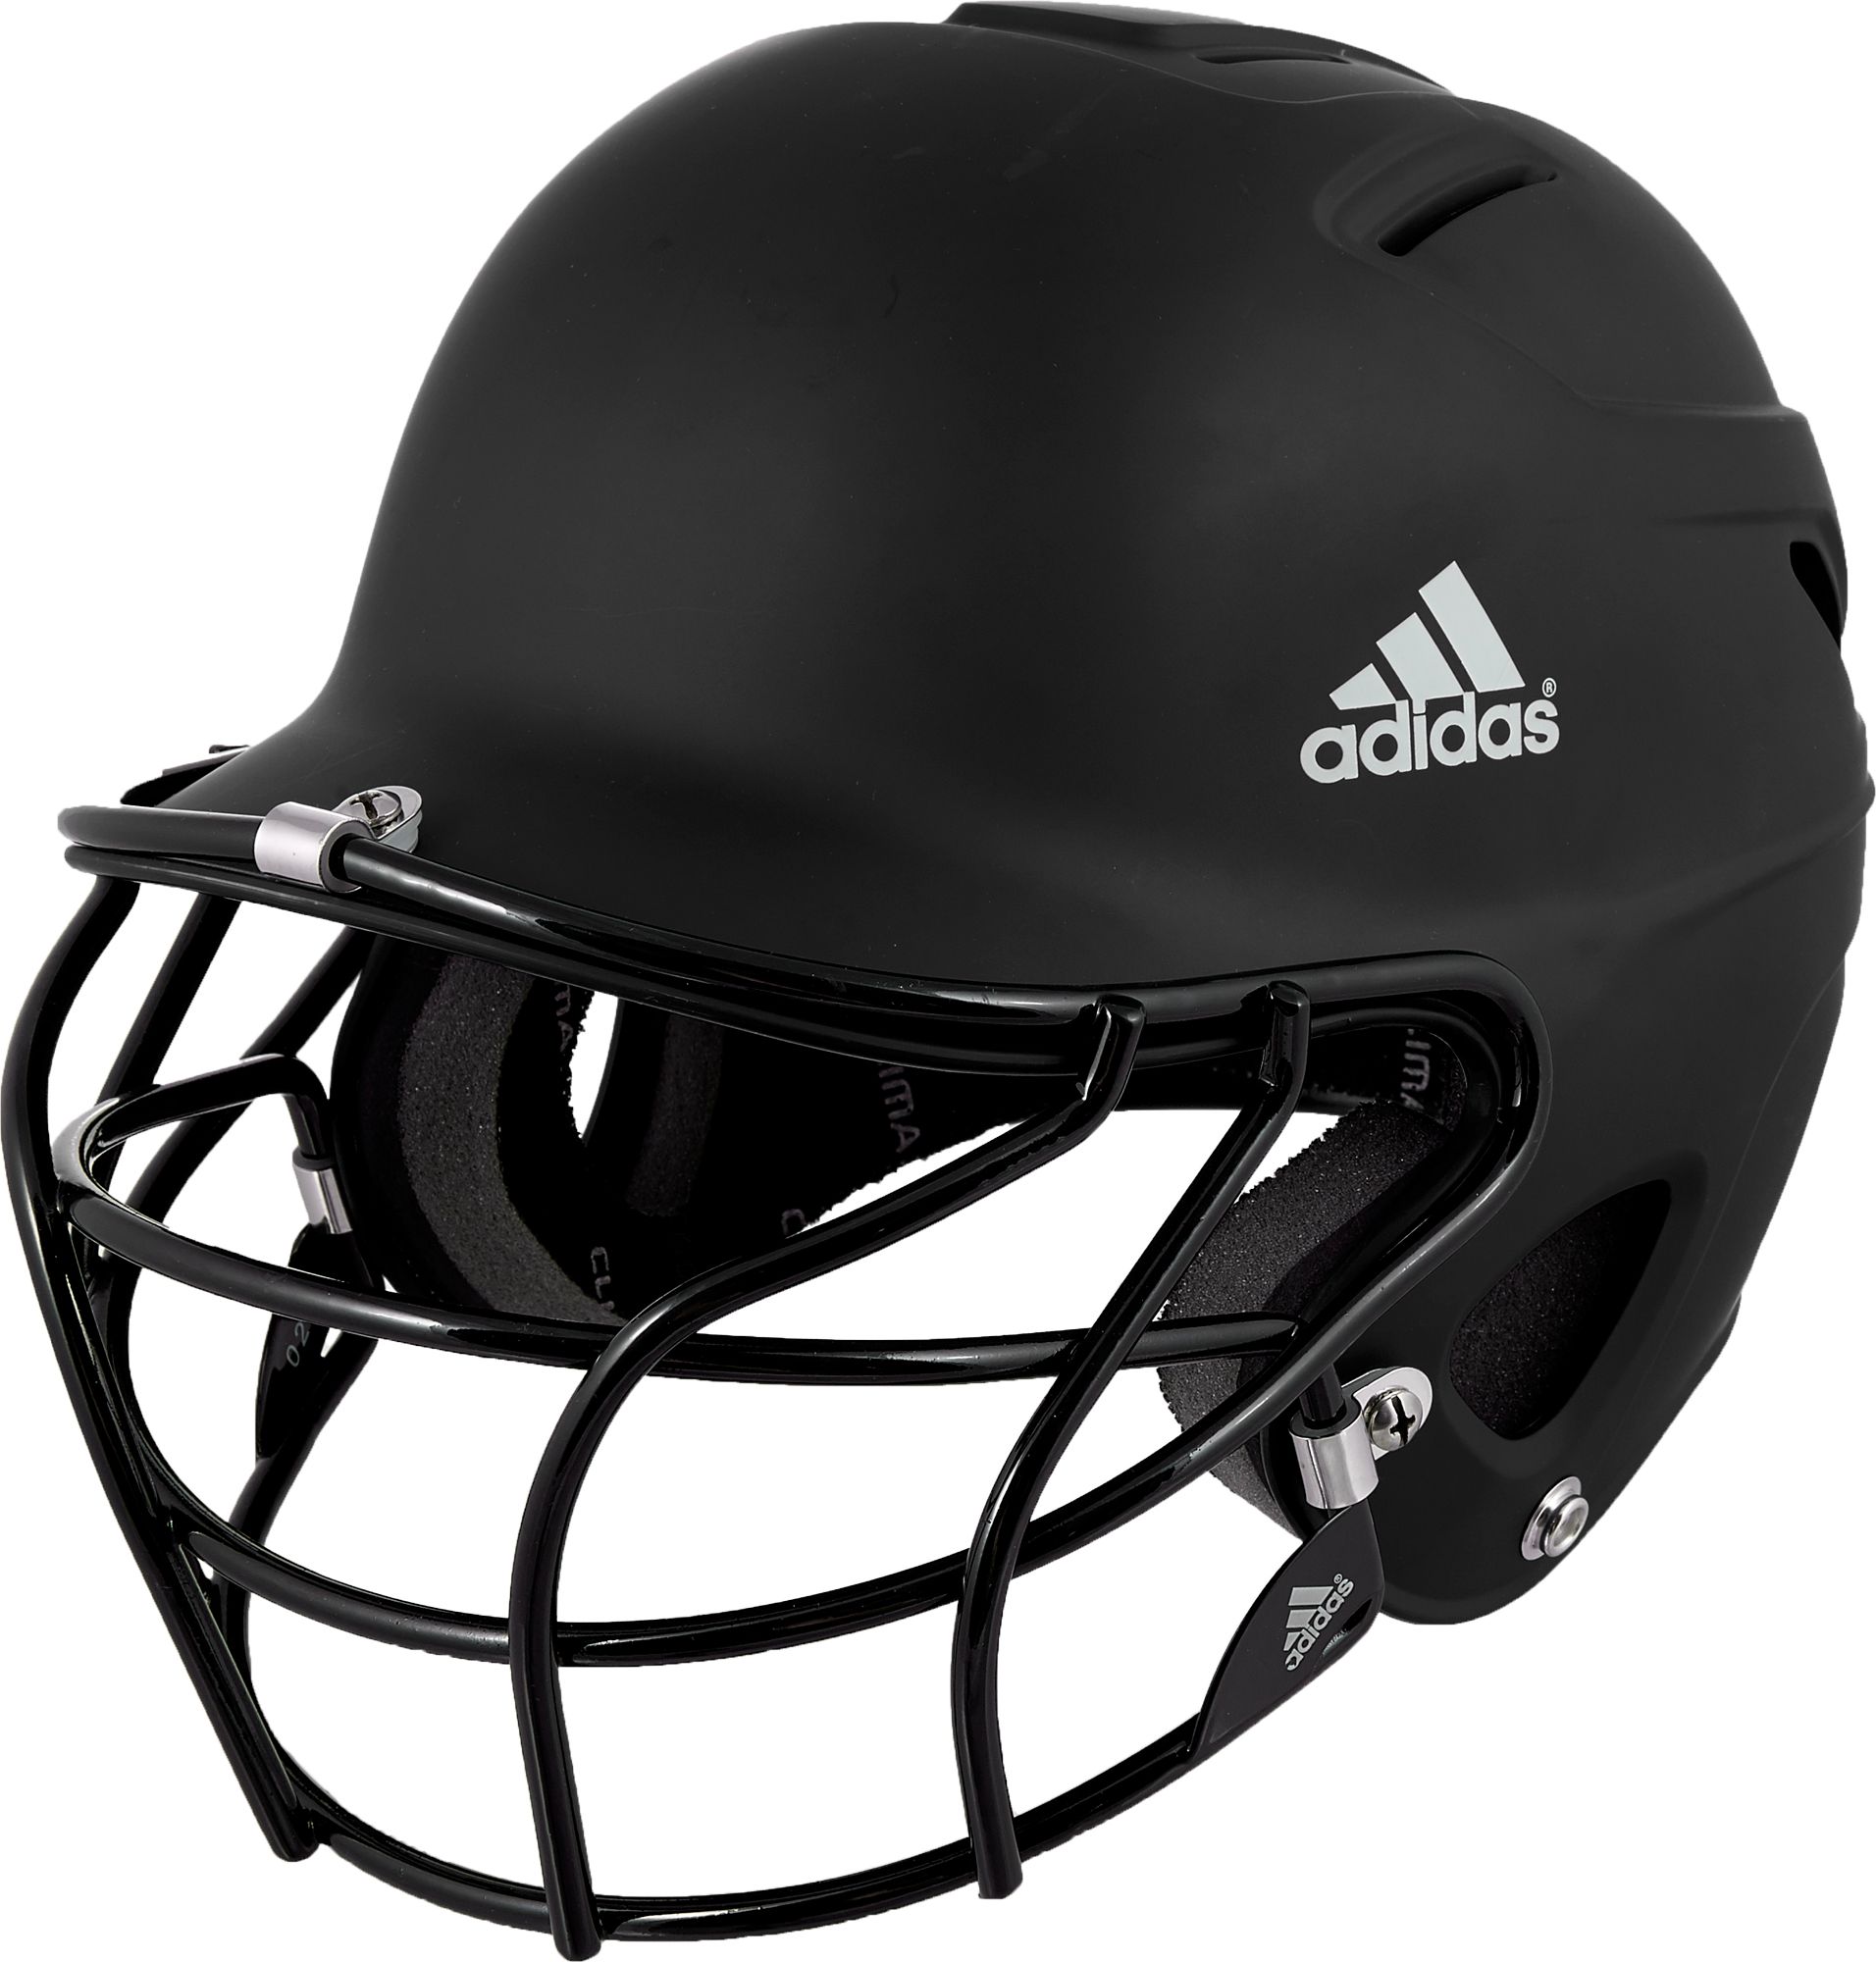 adidas trilogy fastpitch batting helmet